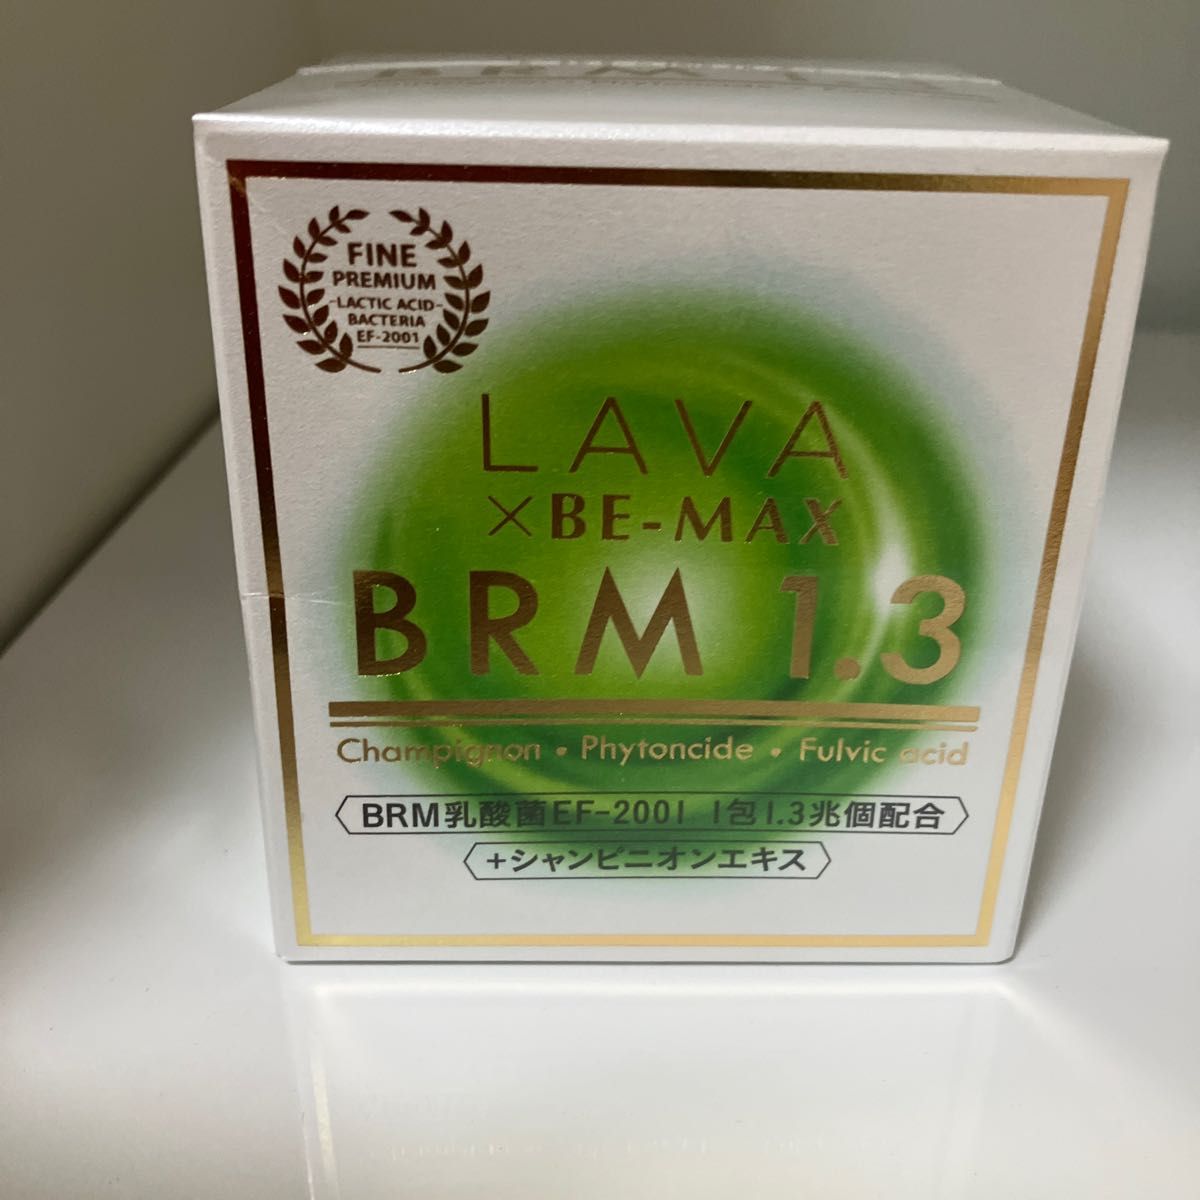 lava B-MAX ベルム1.3 50包✖️3箱とおまけの3包 再再販！ www.m